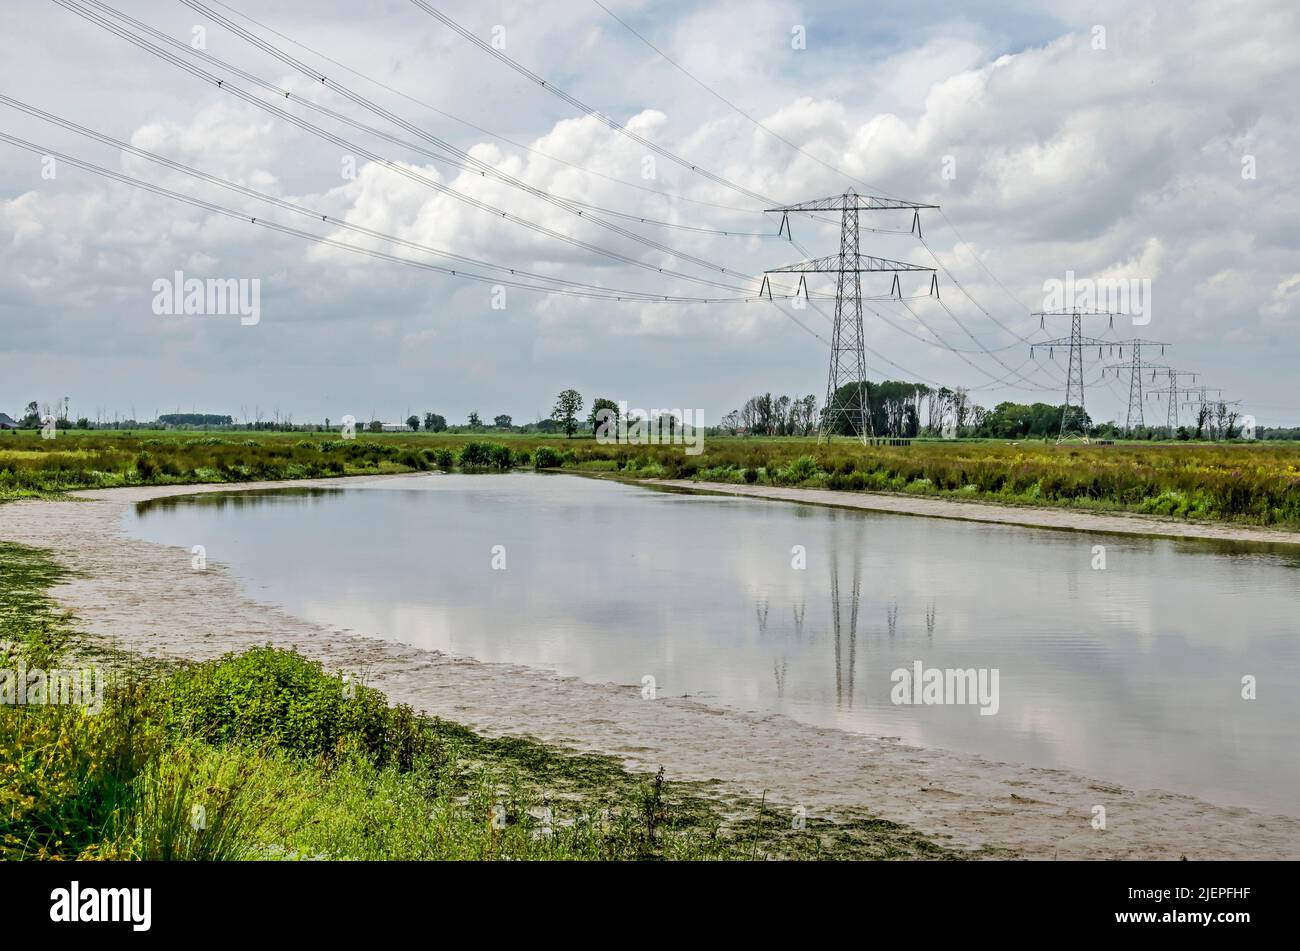 Piloni elettrici e linee elettriche che si riflettono in un corpo d'acqua con banche fangose in una giornata estiva nella regione di Noordwaard nel parco nazionale di Biesbosch Foto Stock